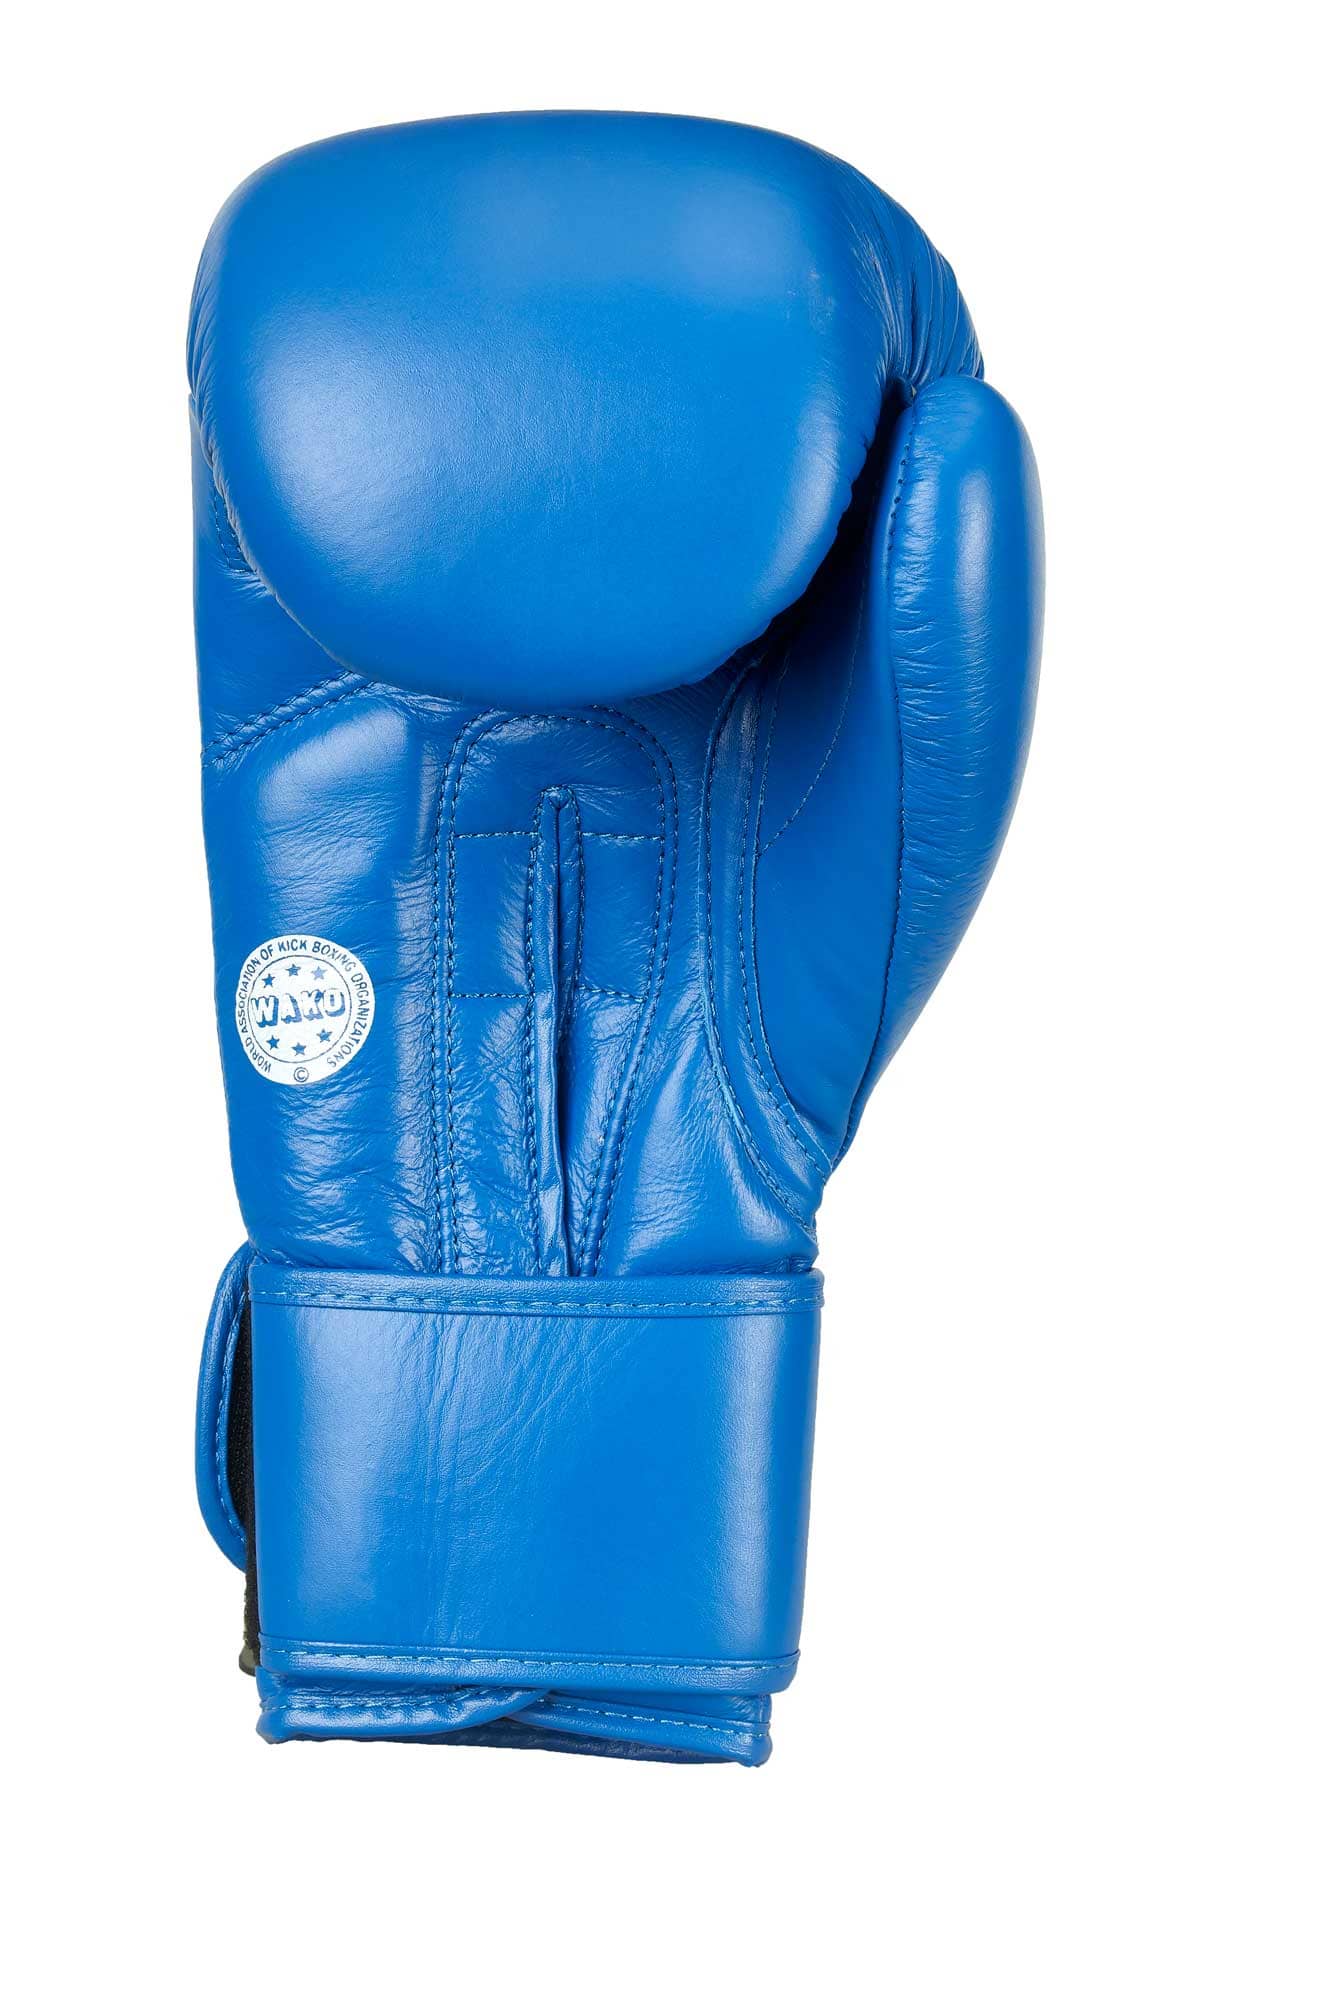 kaufen Boxhandschuhe Adidas Online | Leder EMPAROR WAKO Blau ✓ 10oz